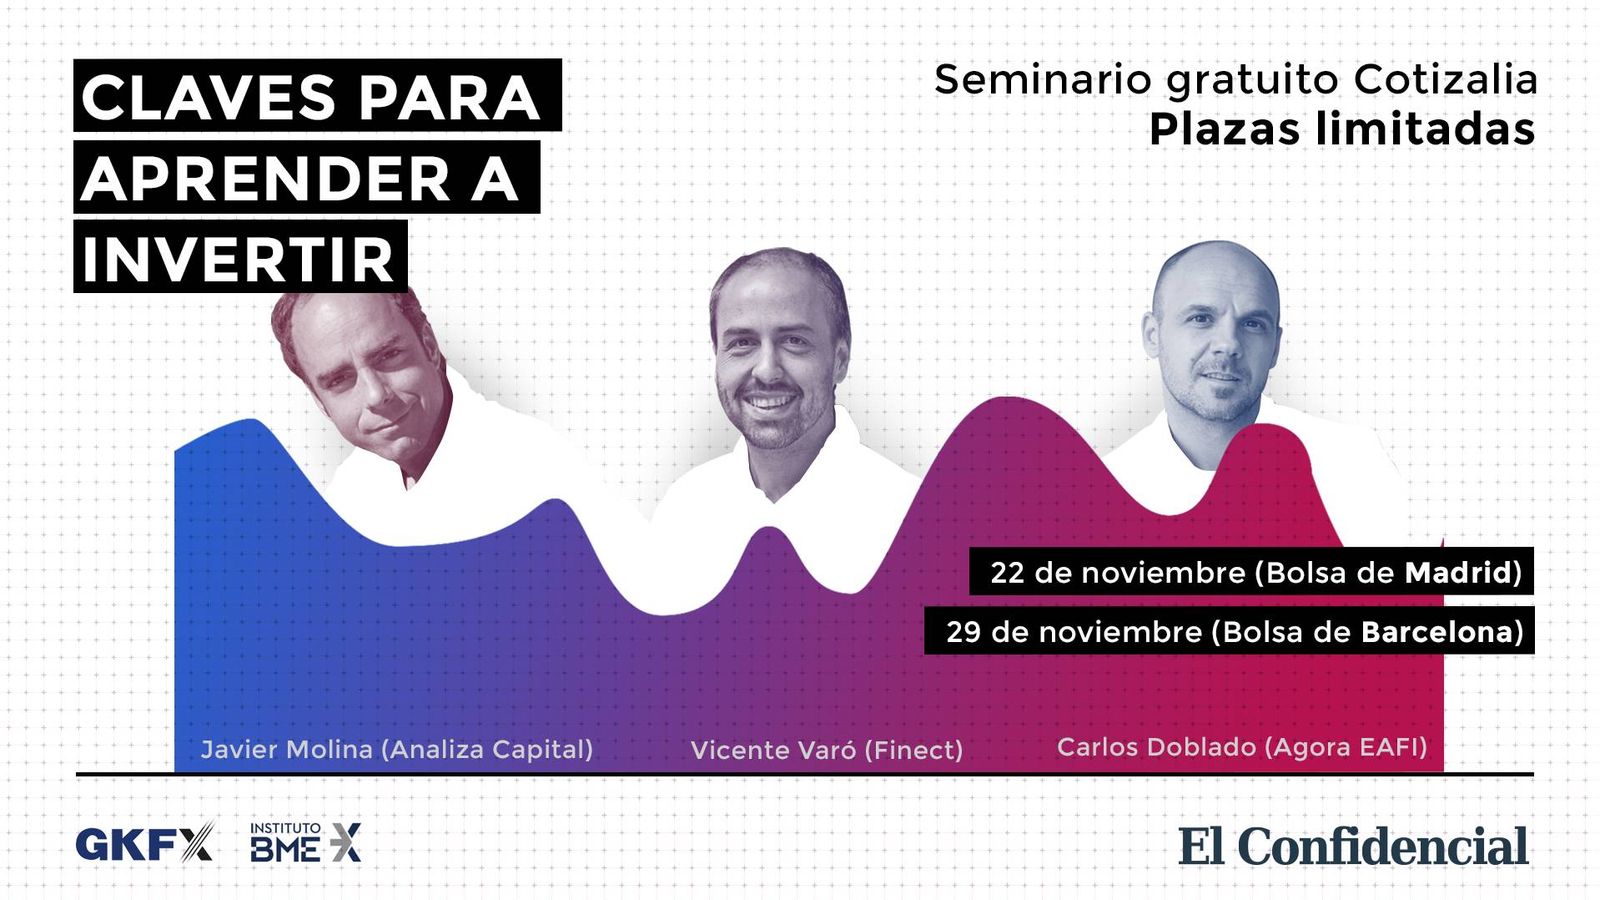 Foto: Claves para Aprender a Invertir con Javier Molina, Vicente Varó y Carlos Doblado